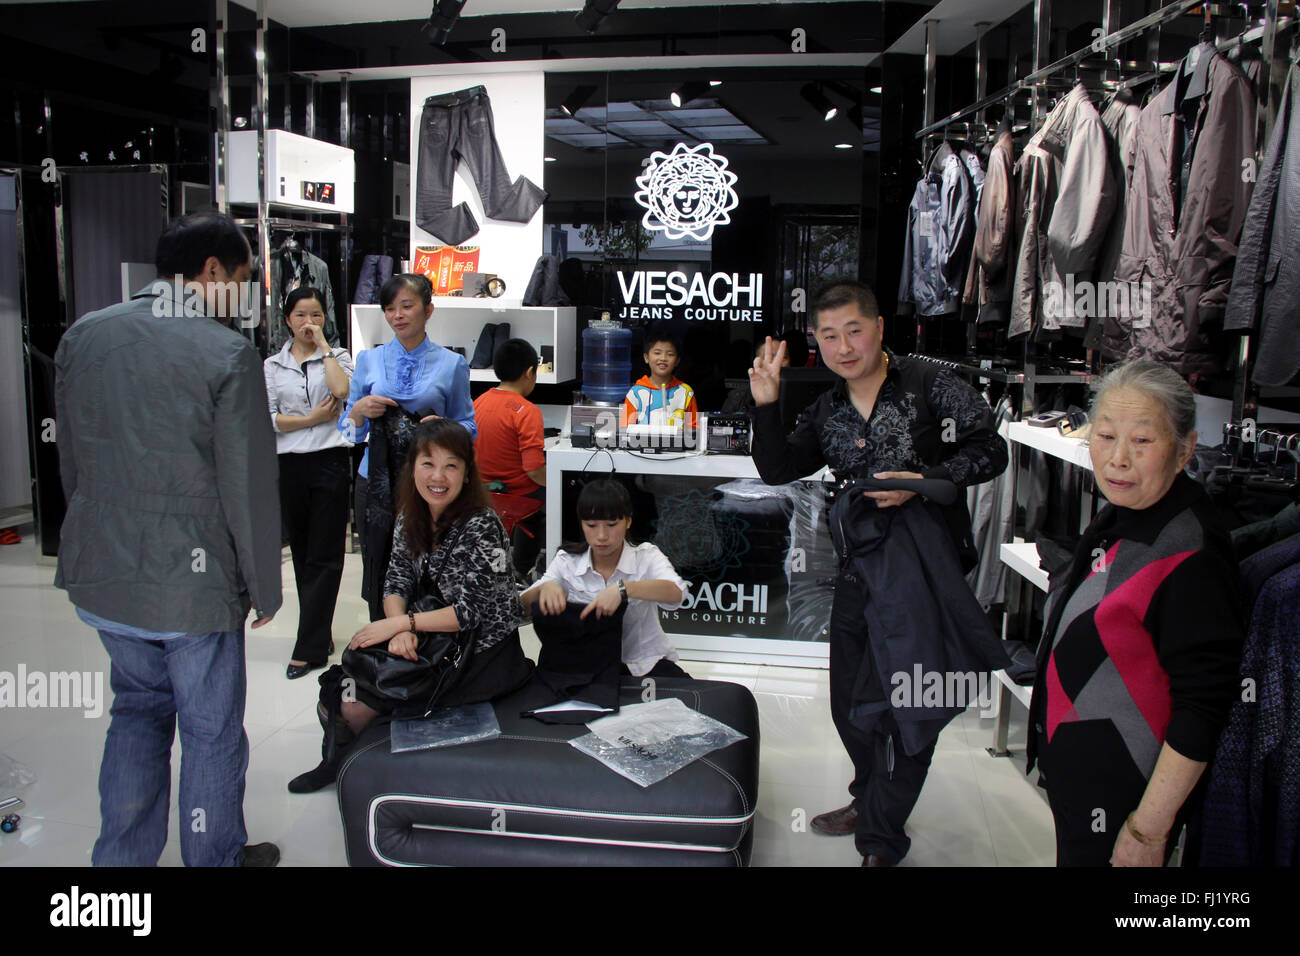 Shop 'Viesachi' imitant la marque VERSACE (violation de copyright) à Zhenyuan, Guizhou , Chine Banque D'Images